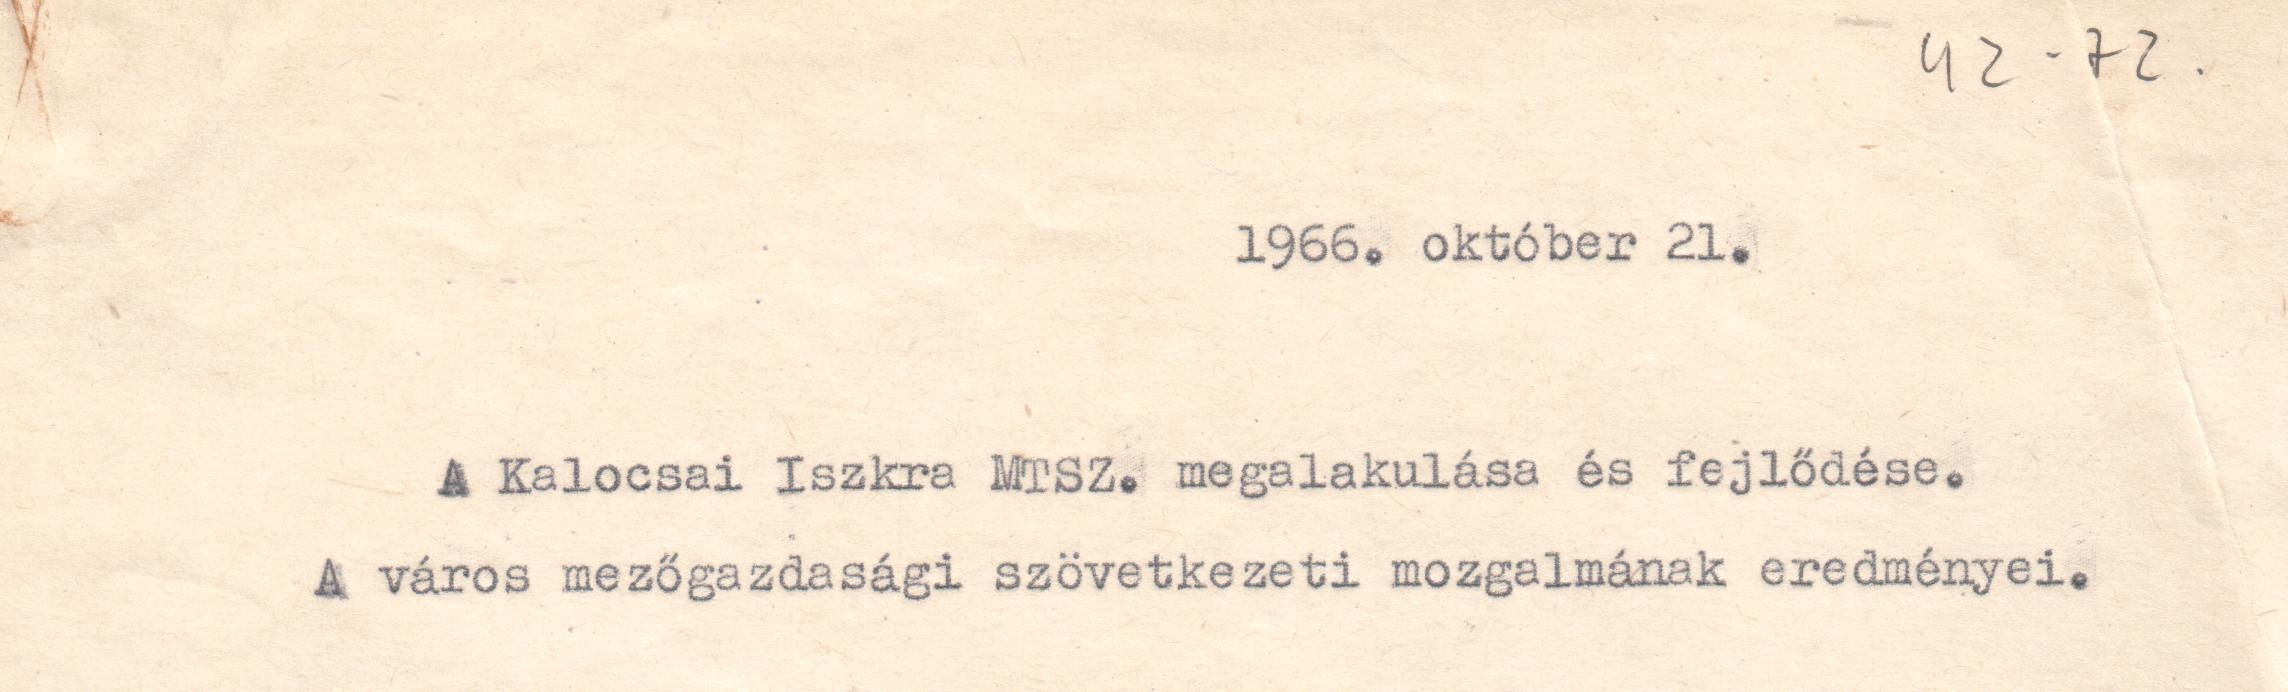 "A kalocsai Iszkra MGTSZ megalakulása és fejlődése" c. előadás szövege. (Viski Károly Múzeum Kalocsa RR-F)